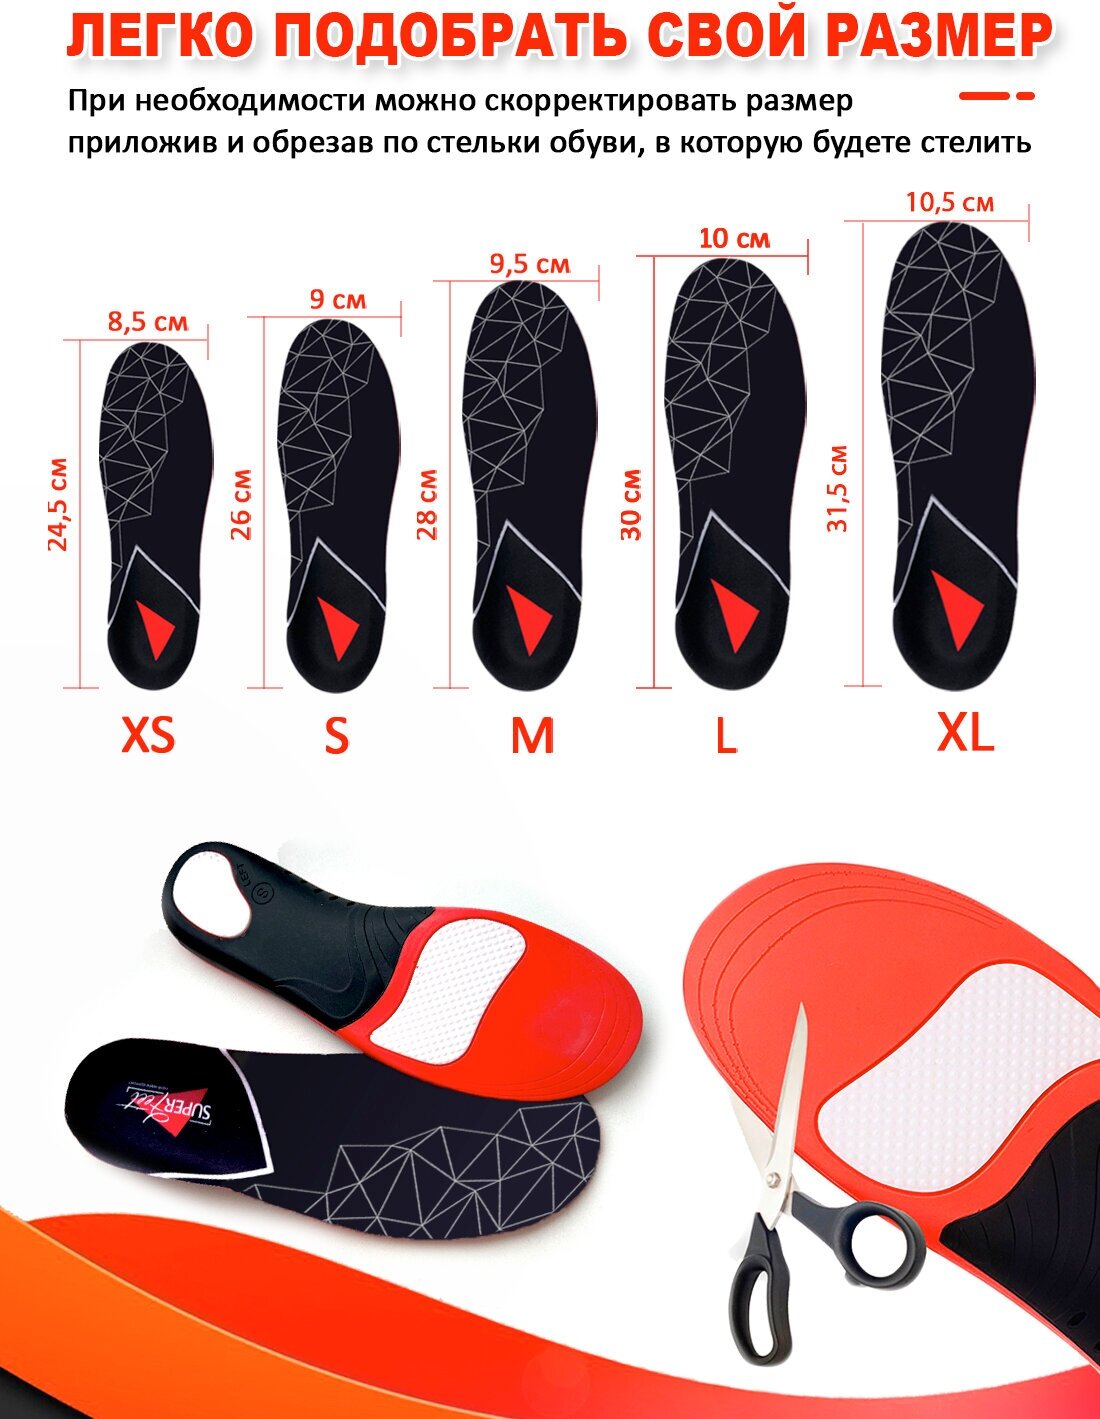 Стельки ортопедические спортивные Super Feet XL (46-48) для обуви при плоскостопии